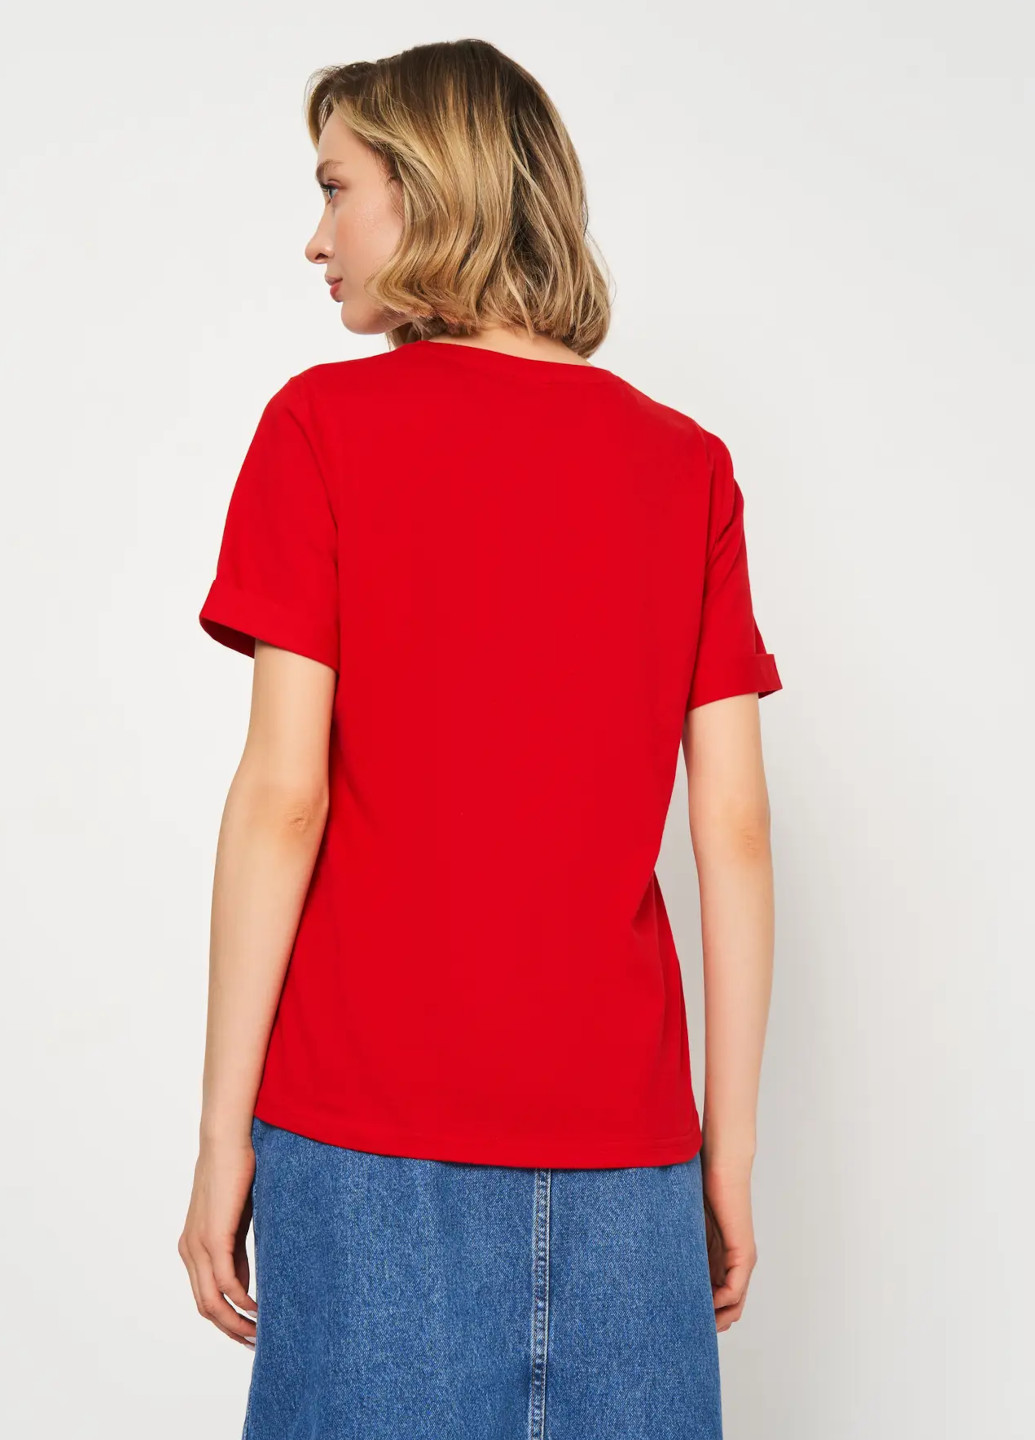 Красная всесезон футболка женская с коротким рукавом Роза